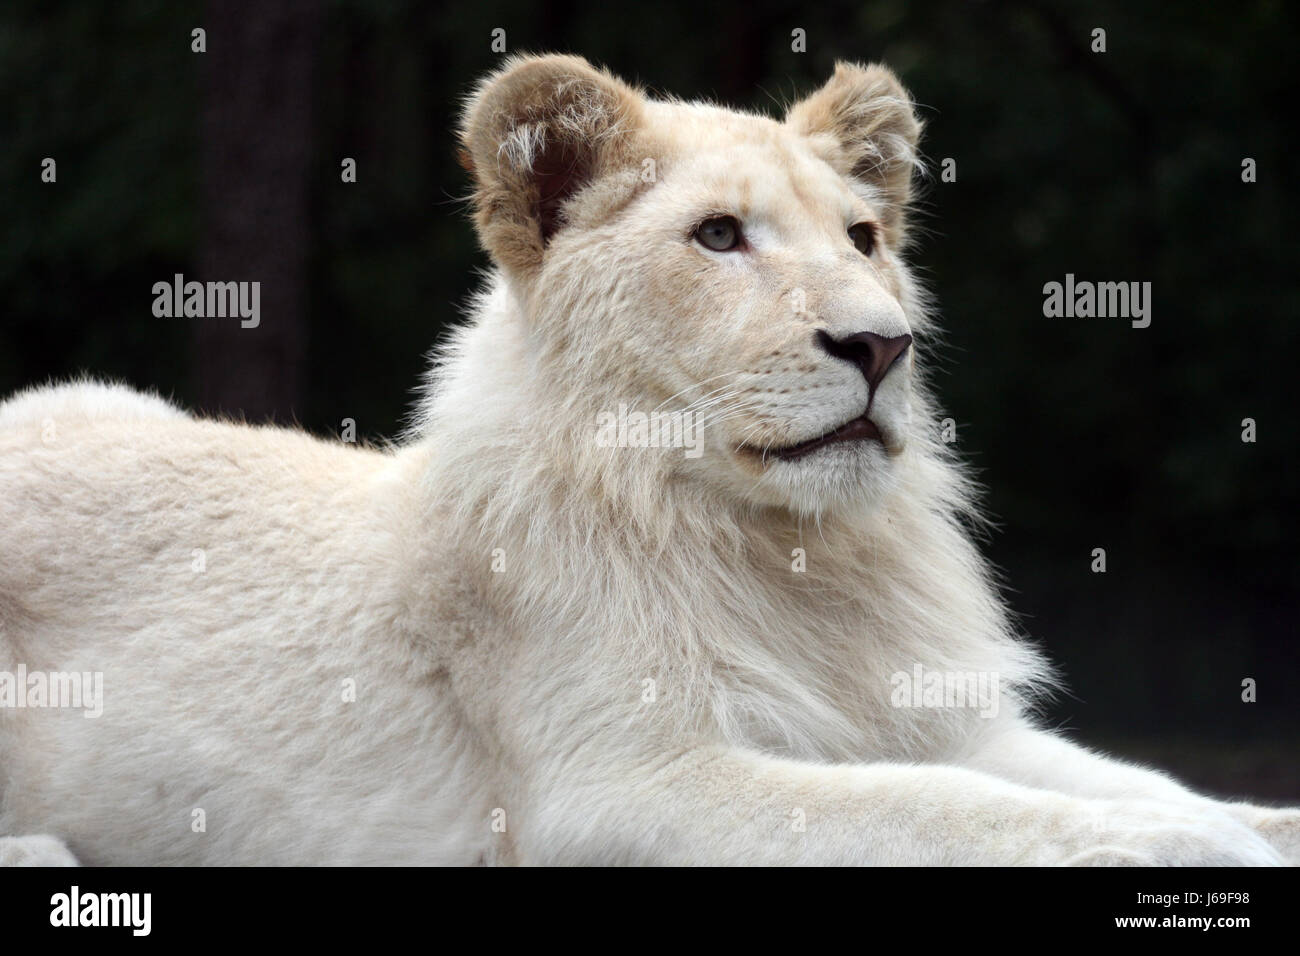 Africa animali lion cat gatto grande predatore felino predator leonessa africa animali Foto Stock